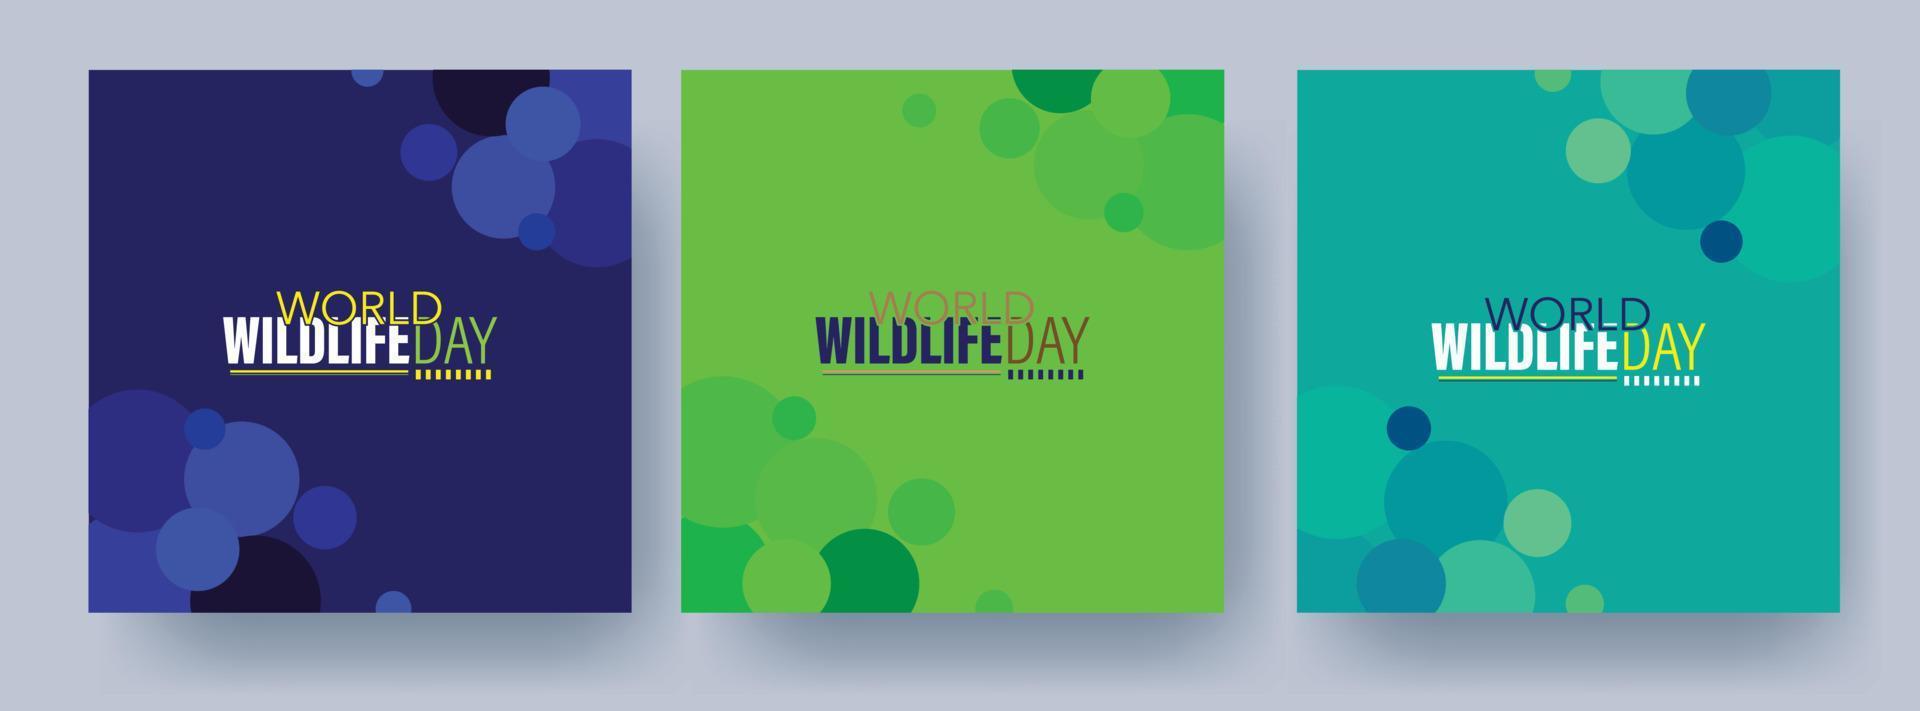 värld vilda djur och växter dag logotyp design mall vektor